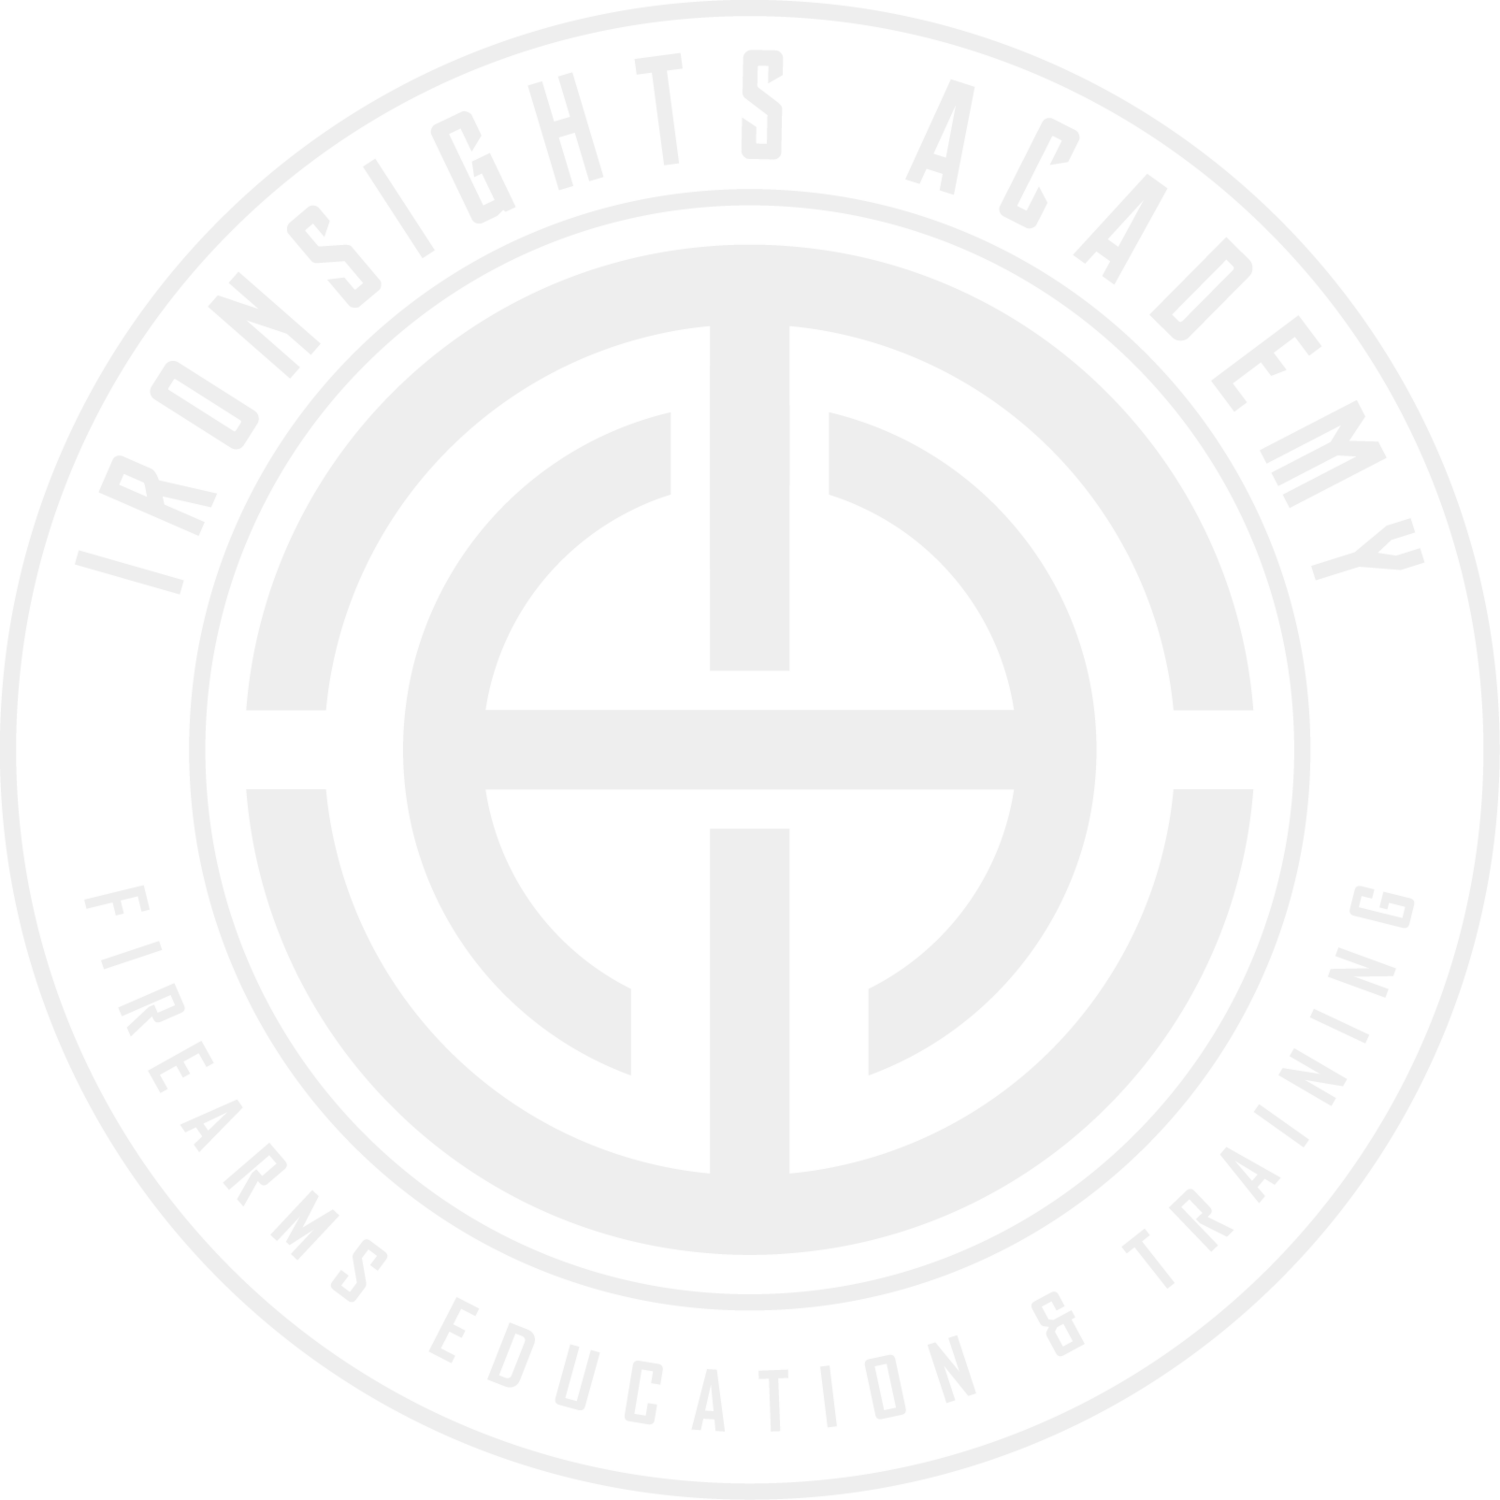 Ironsights Academy